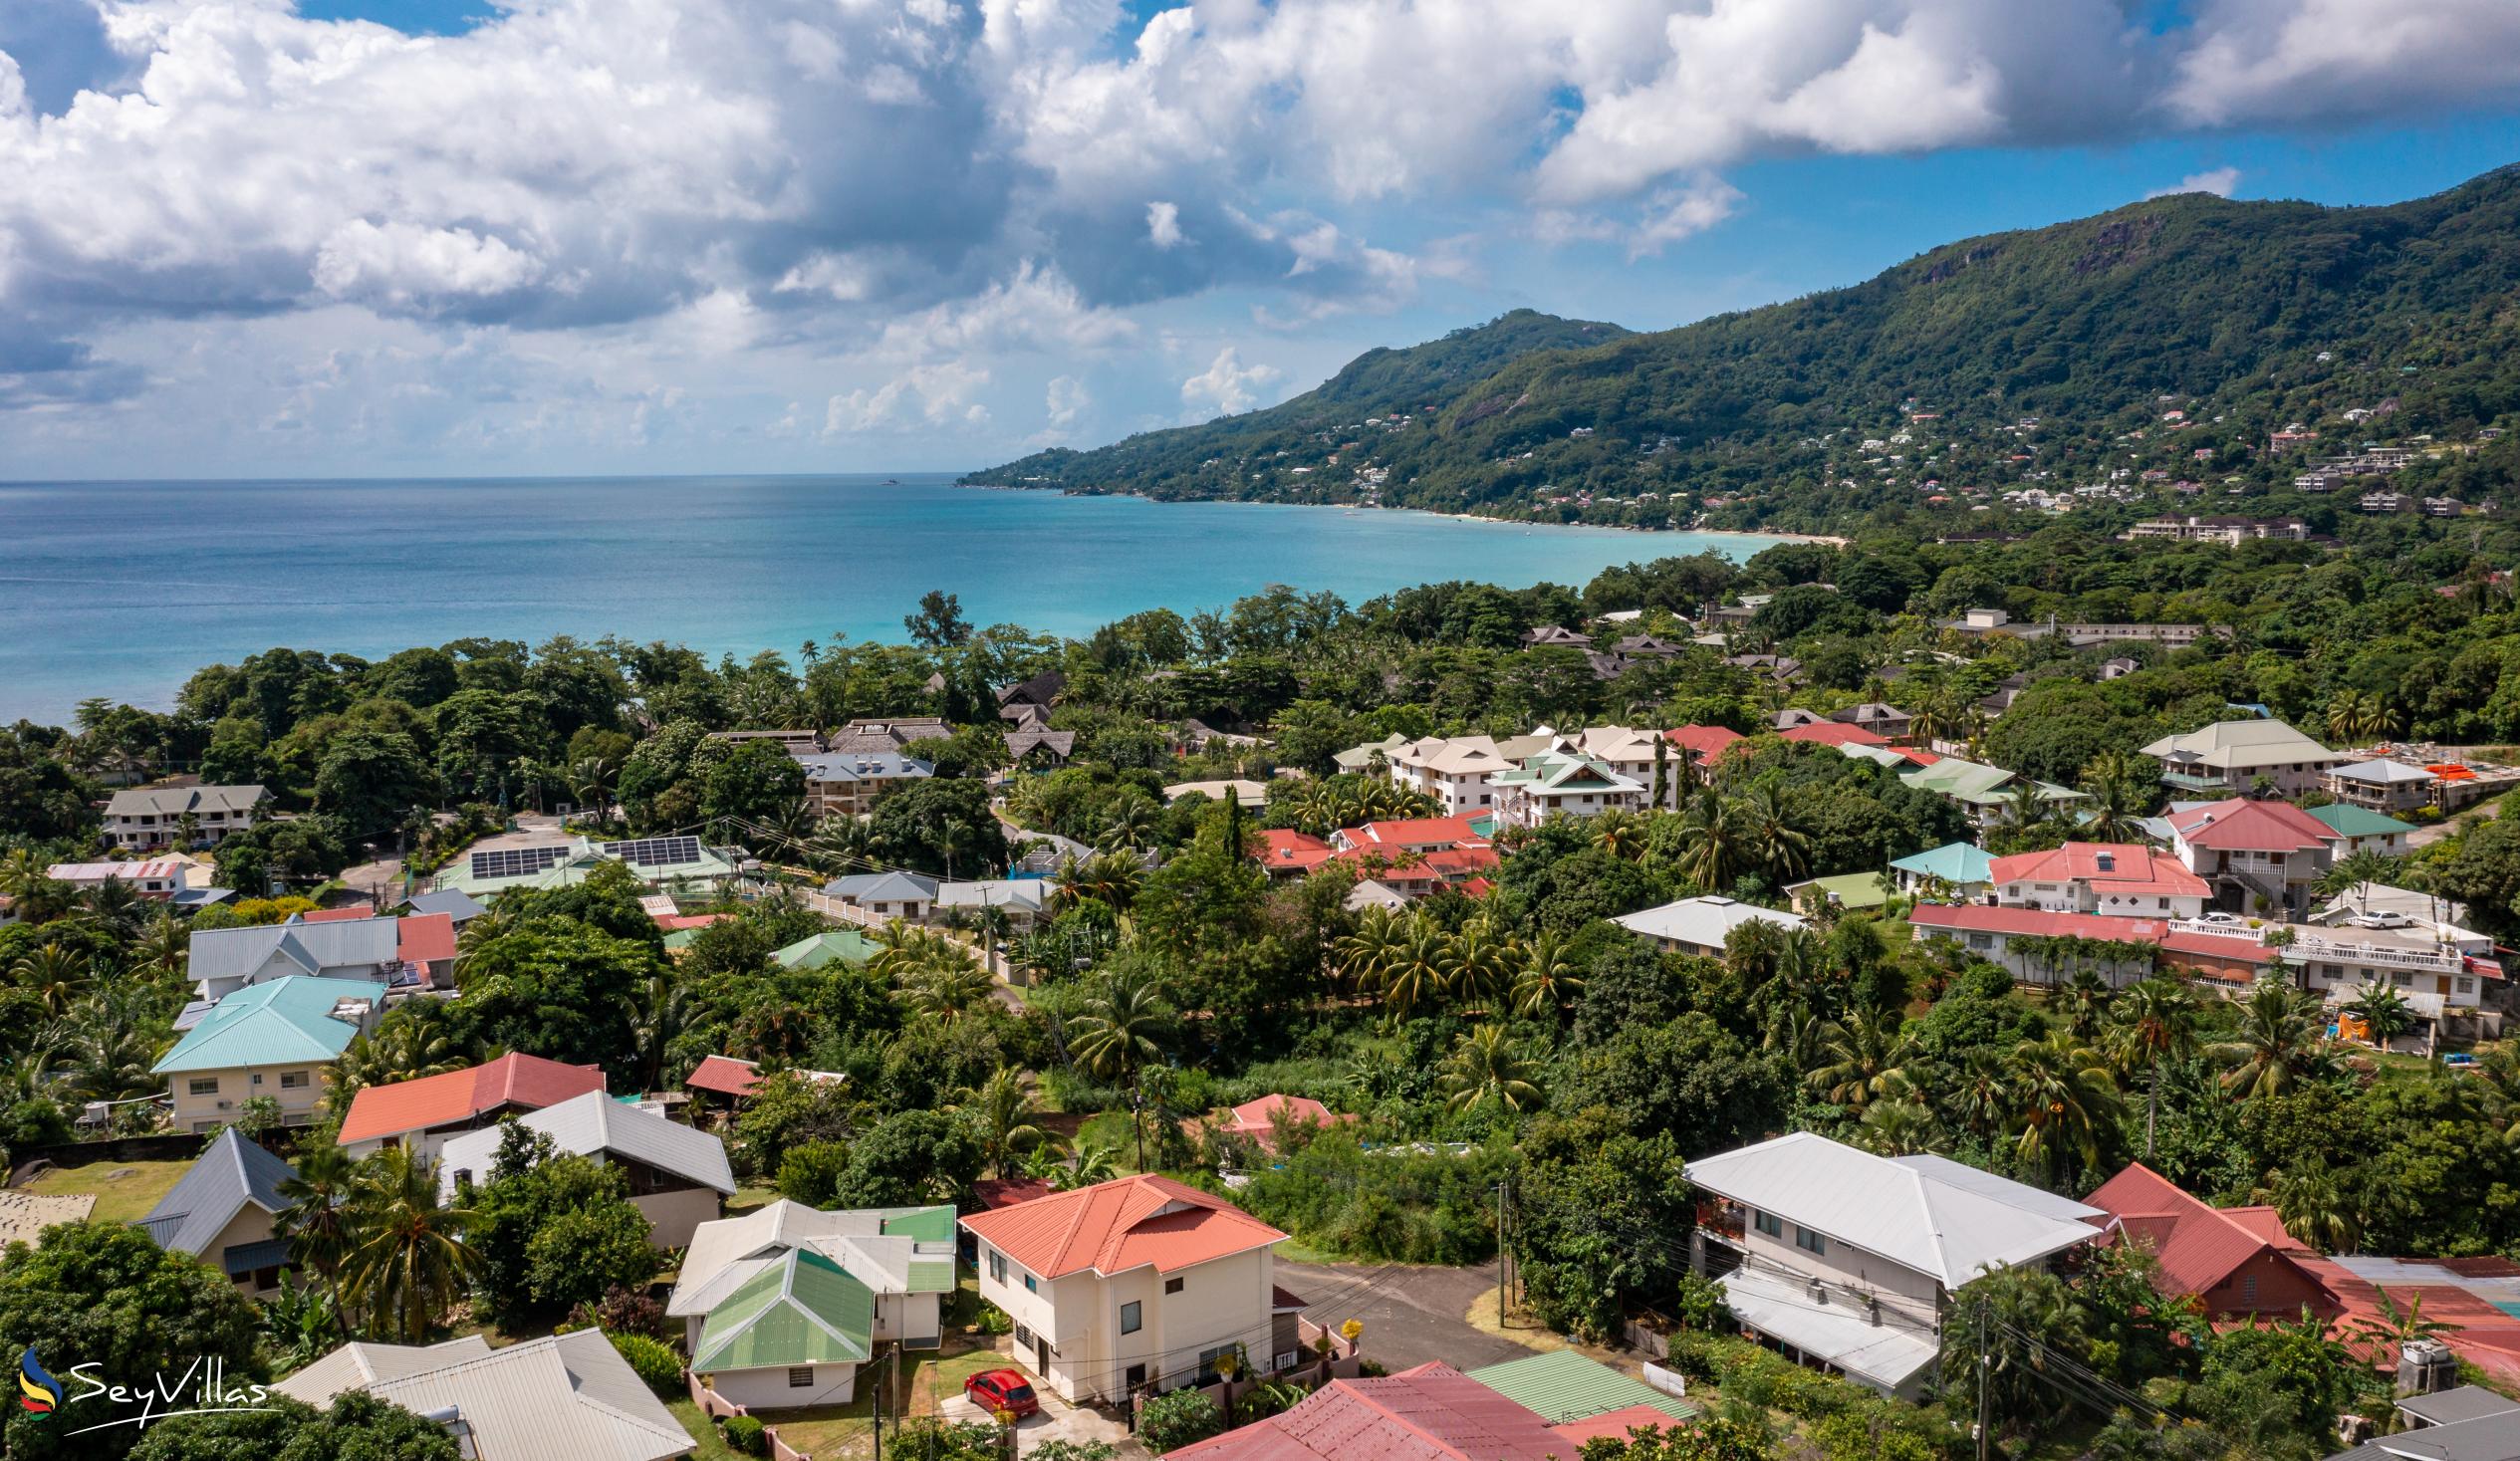 Foto 36: Villa Verde - Posizione - Mahé (Seychelles)